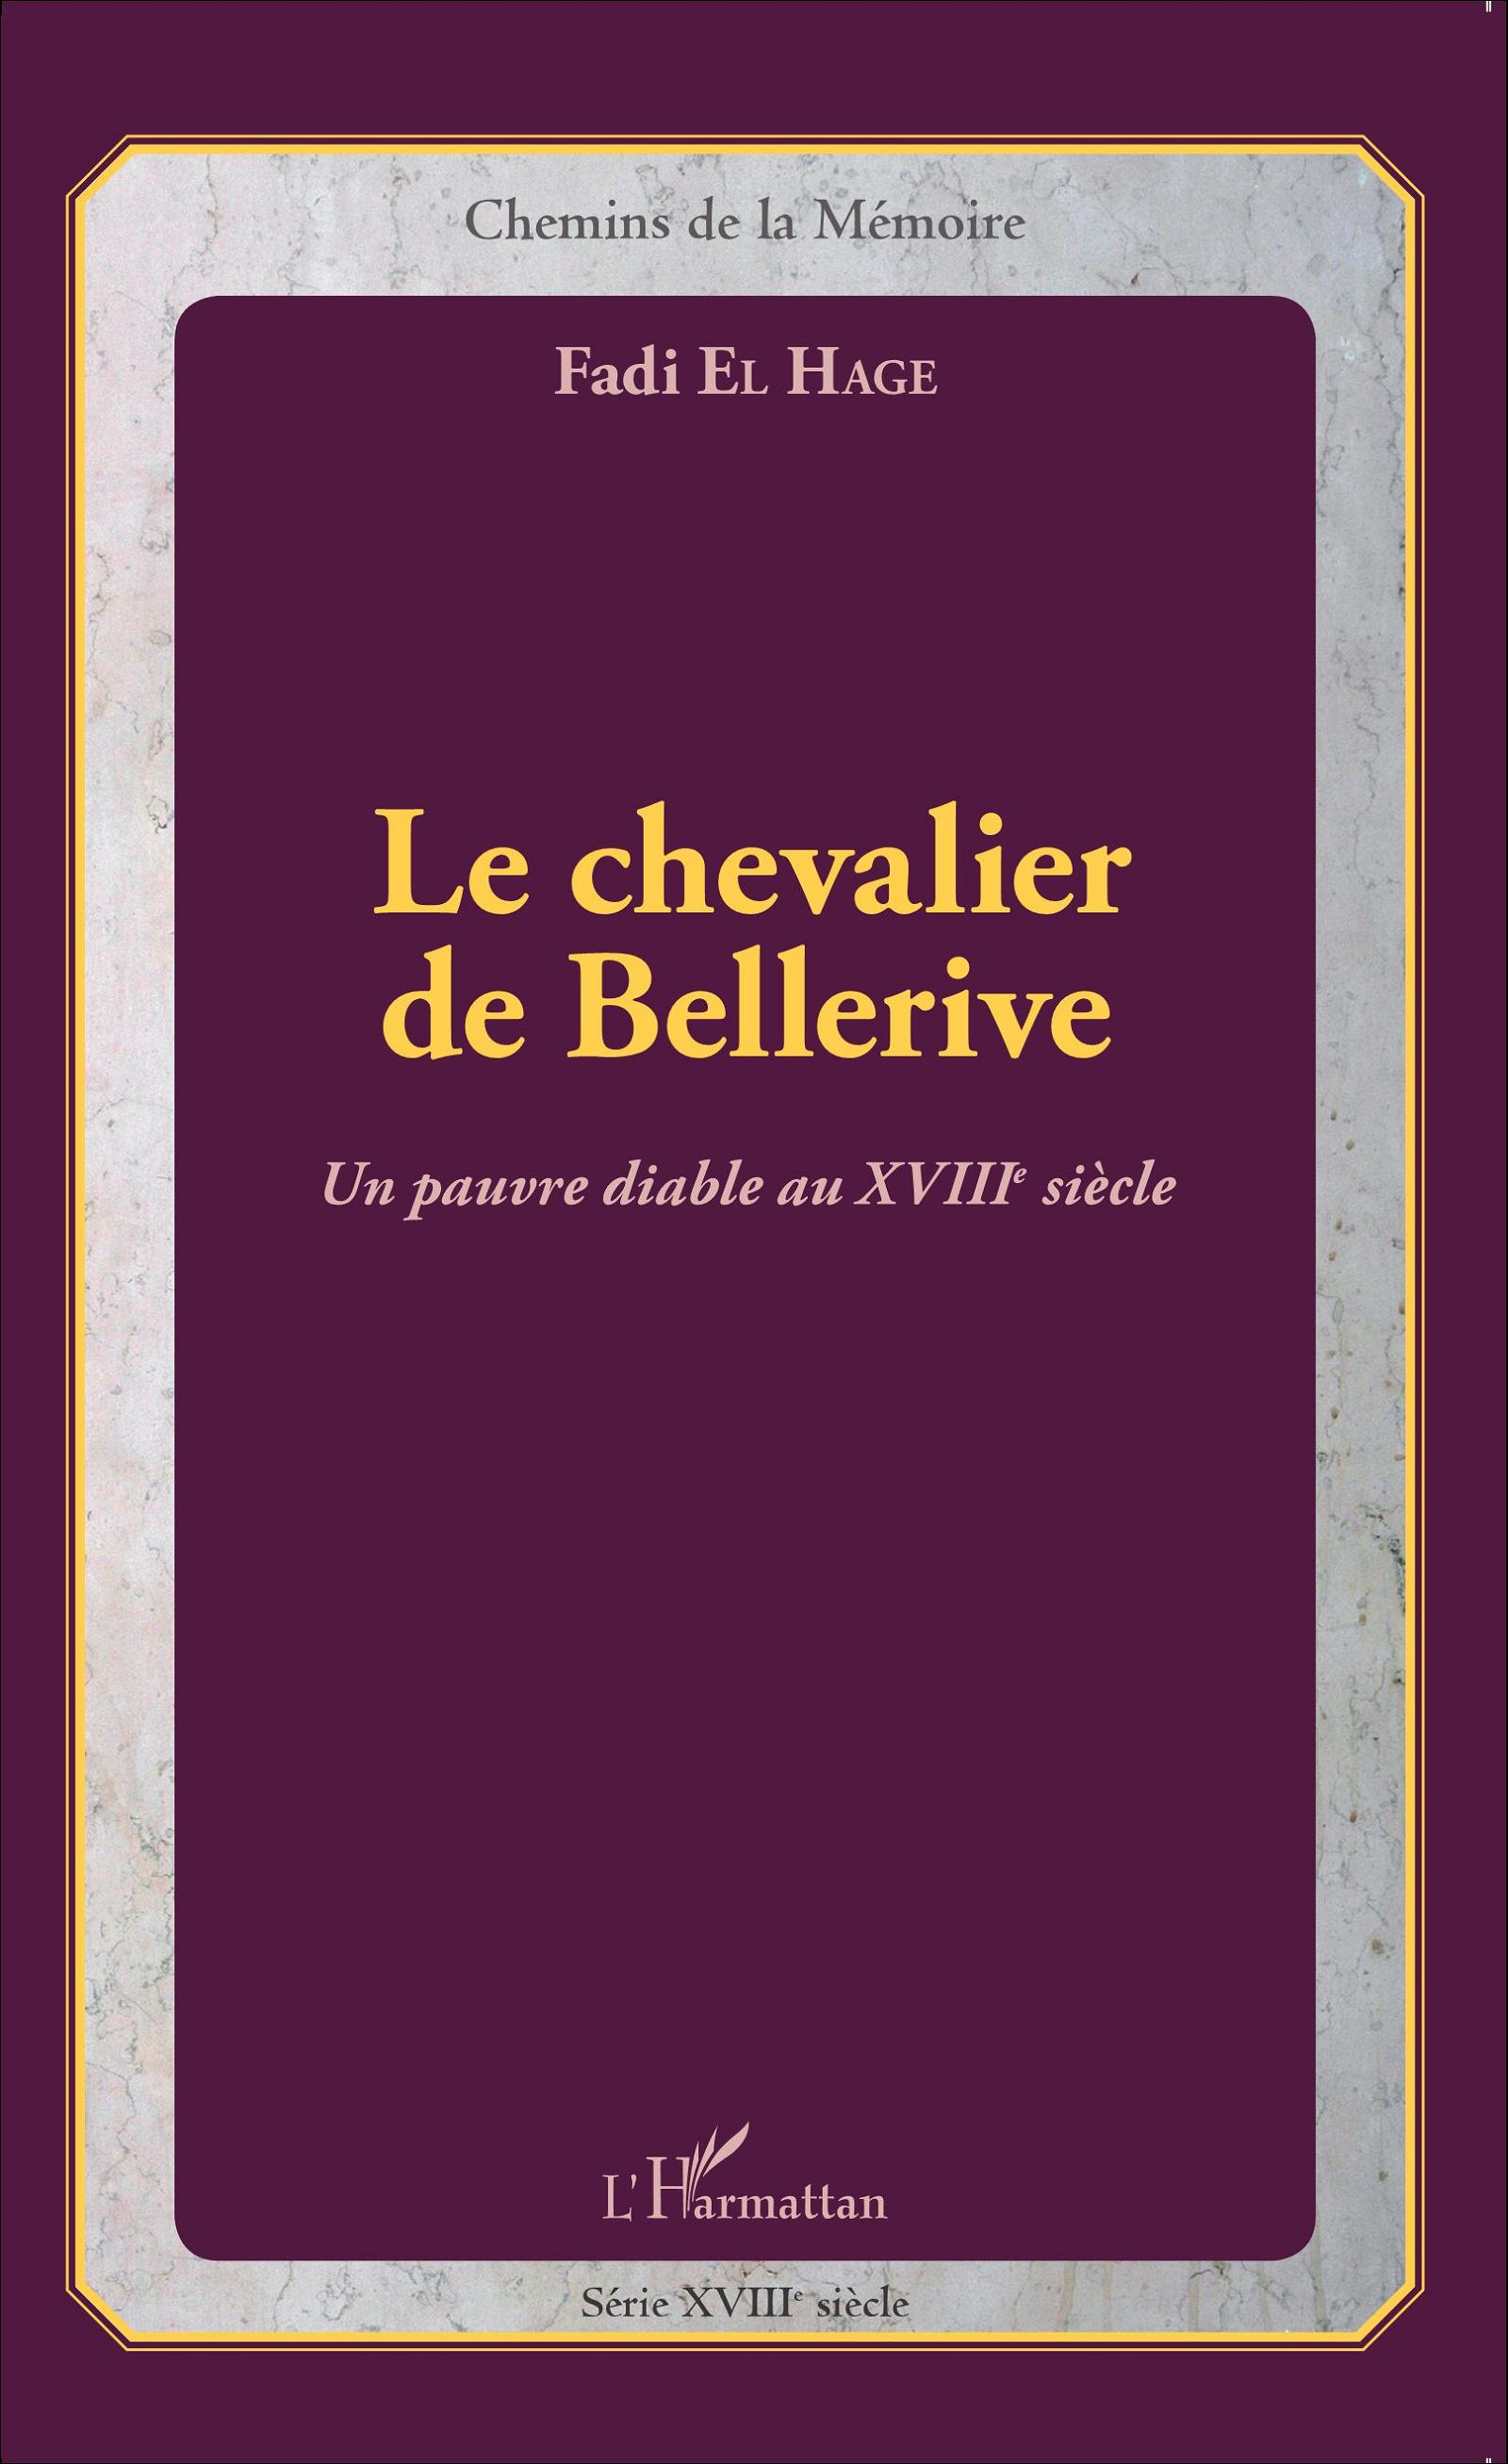 F. El Hage, Le Chevalier de Bellerive - Un pauvre diable au XVIIIème siècle